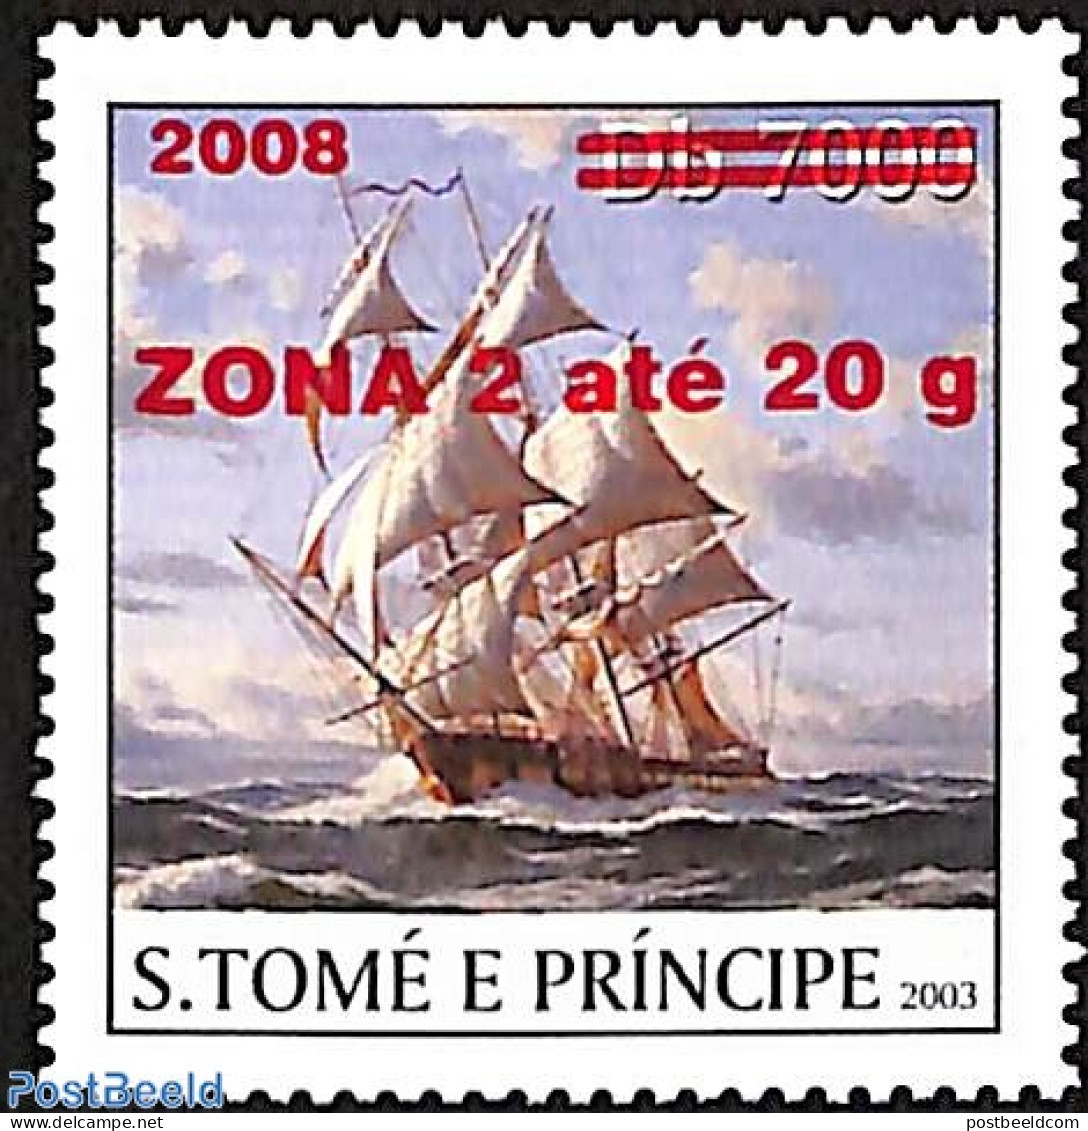 Sao Tome/Principe 2008 Ship, Overprint, Mint NH, Nature - Transport - Water, Dams & Falls - Ships And Boats - Boten